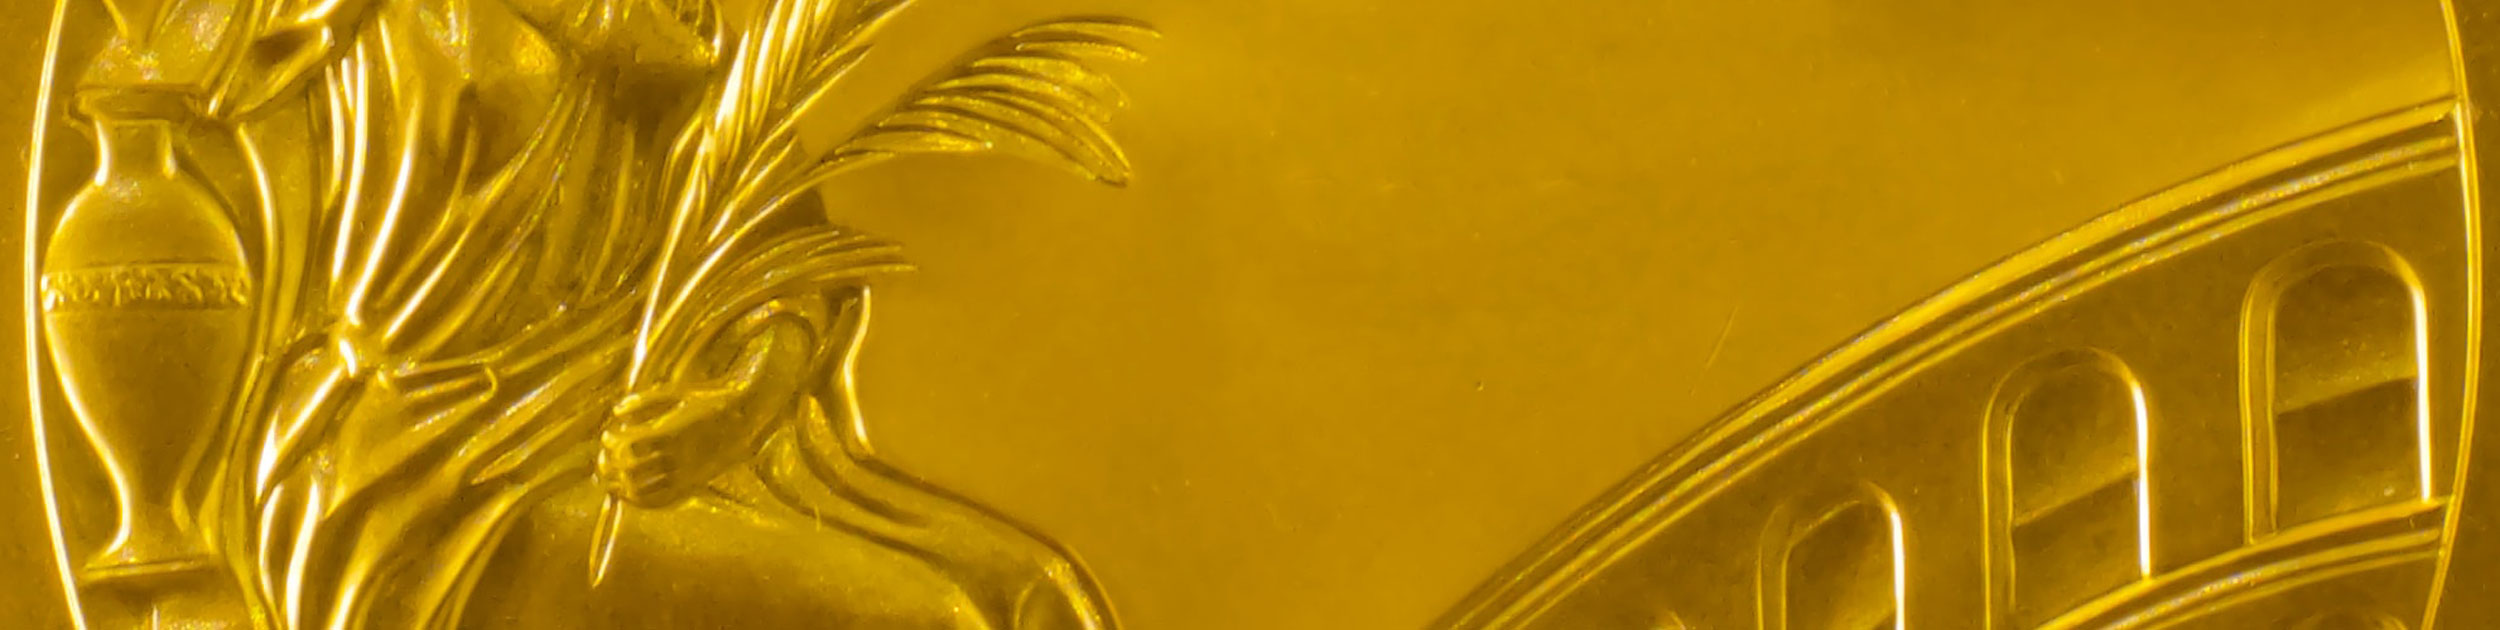 image golden metal engraving